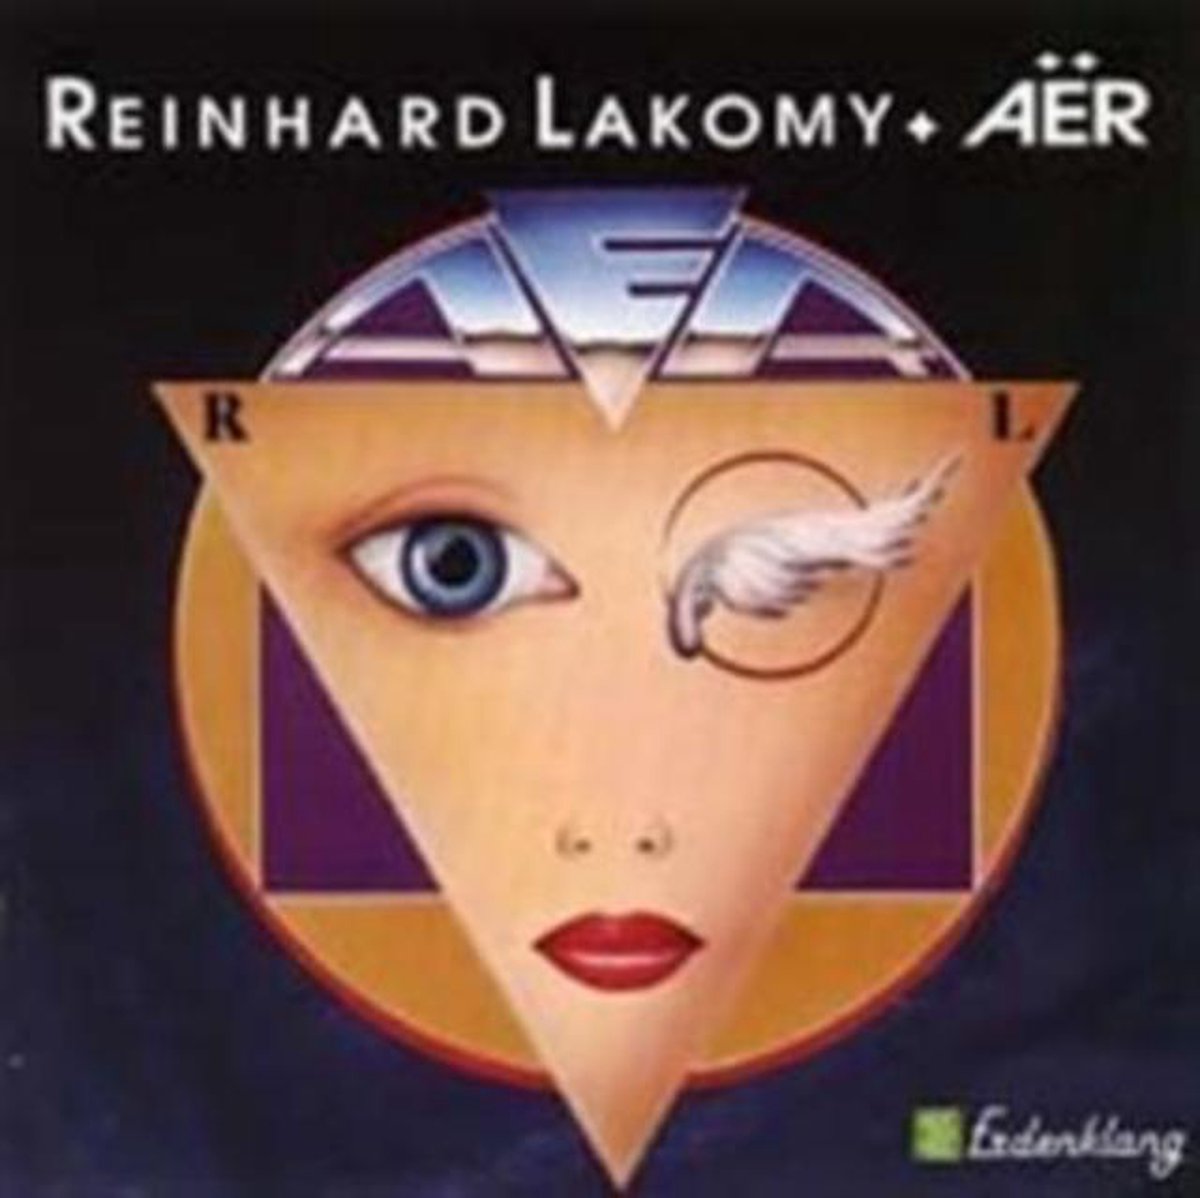 Aer - Reinhard Lakomy